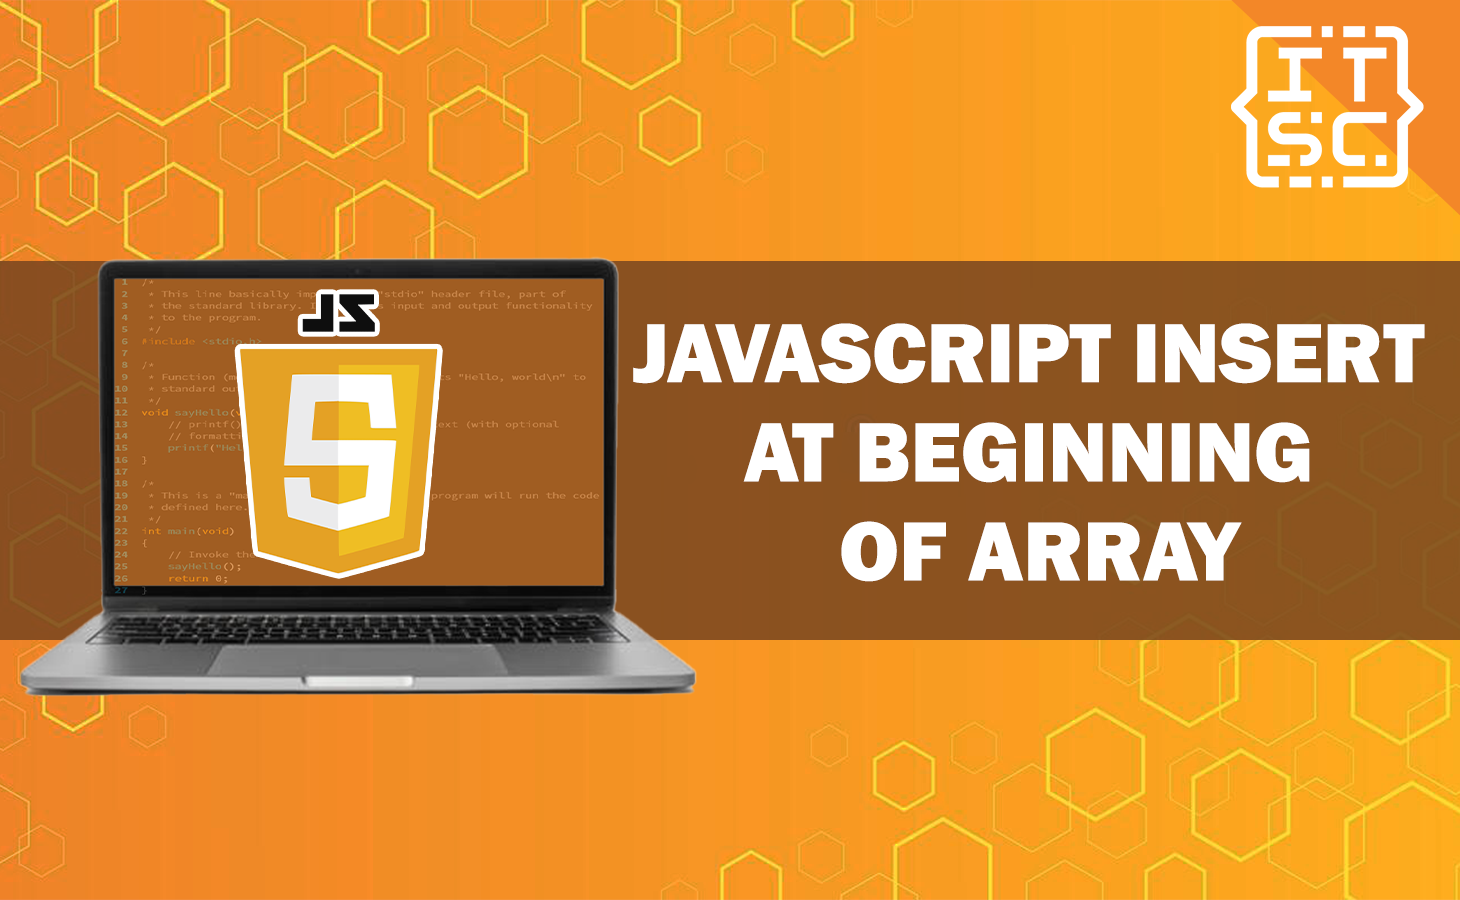 JavaScript Insert at Beginning of Array